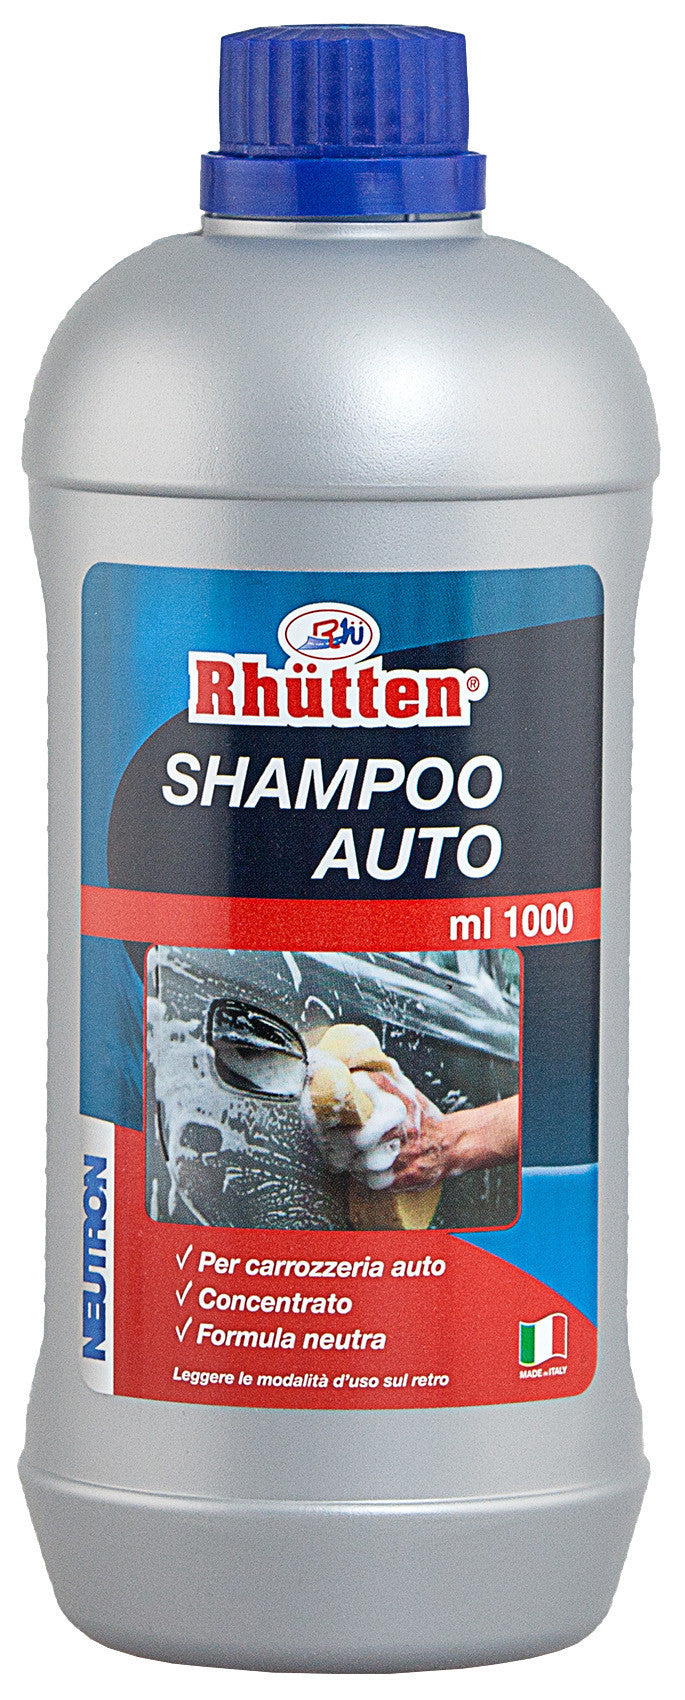 Rhutten shampoo concentrato   1000 ml.